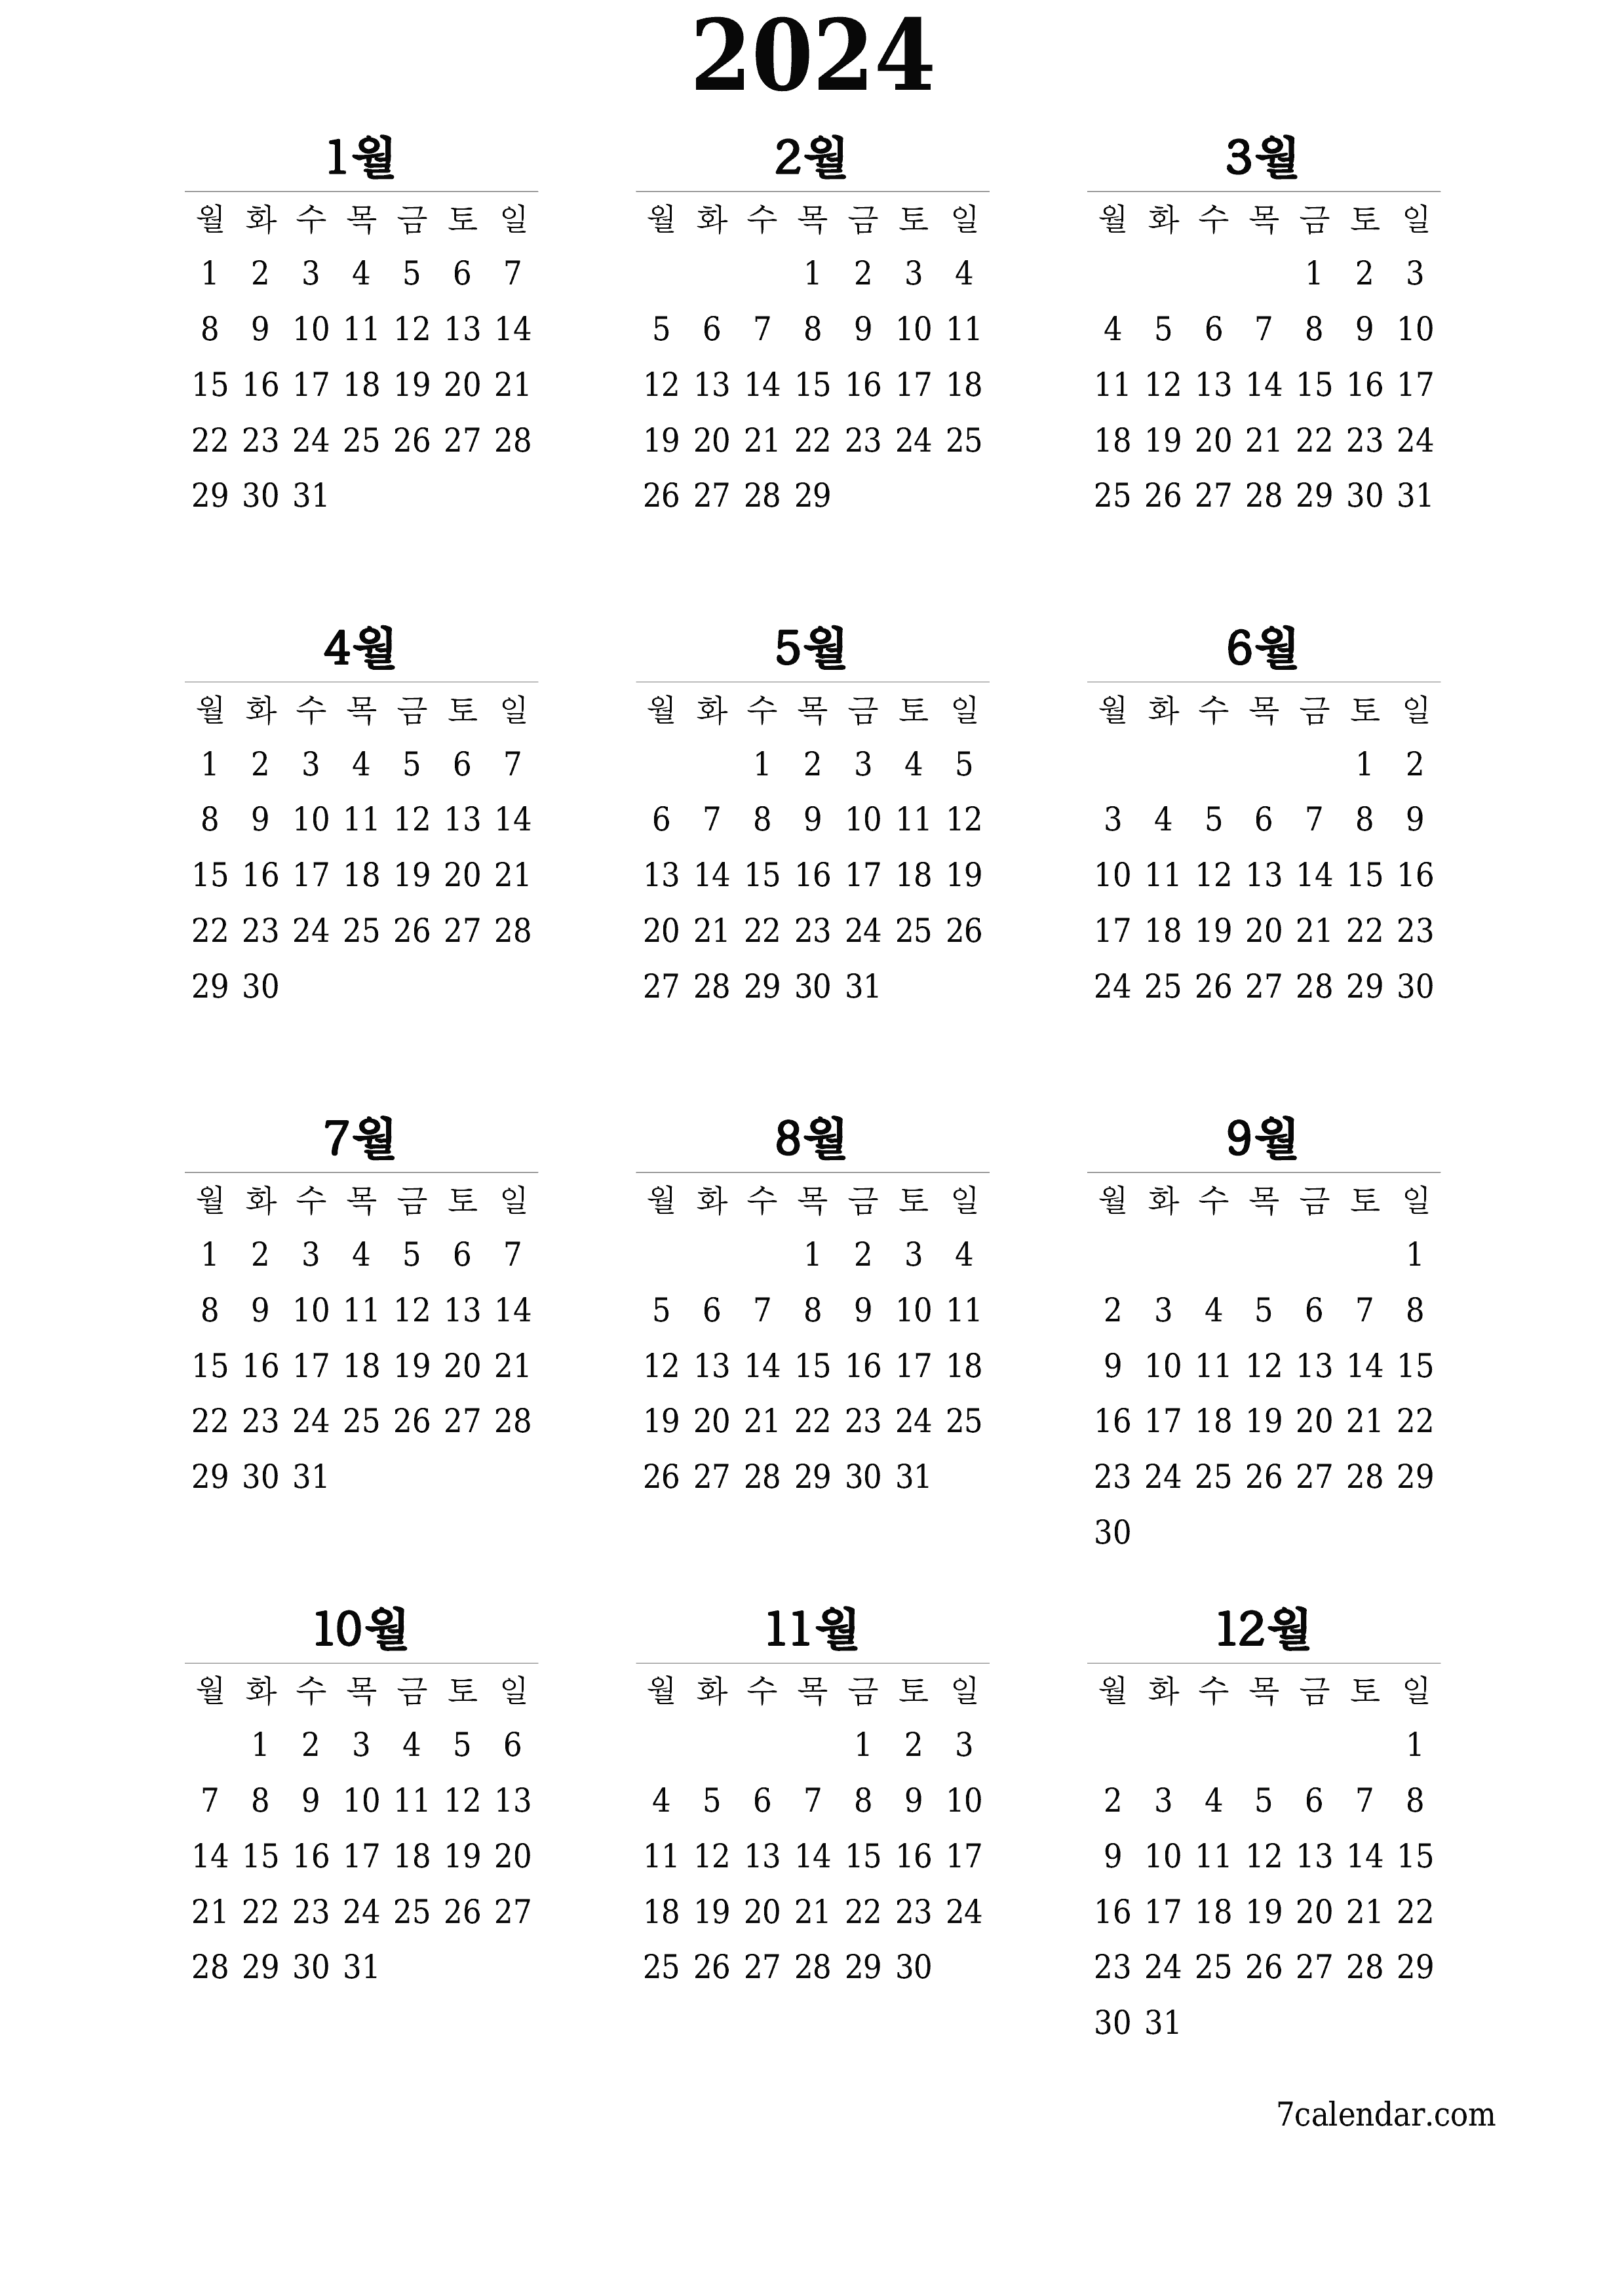 메모가있는 2024 년의 연간 플래너 캘린더 비우기, 저장하고 PDF PNG Korean-7calendar.com으로 인쇄